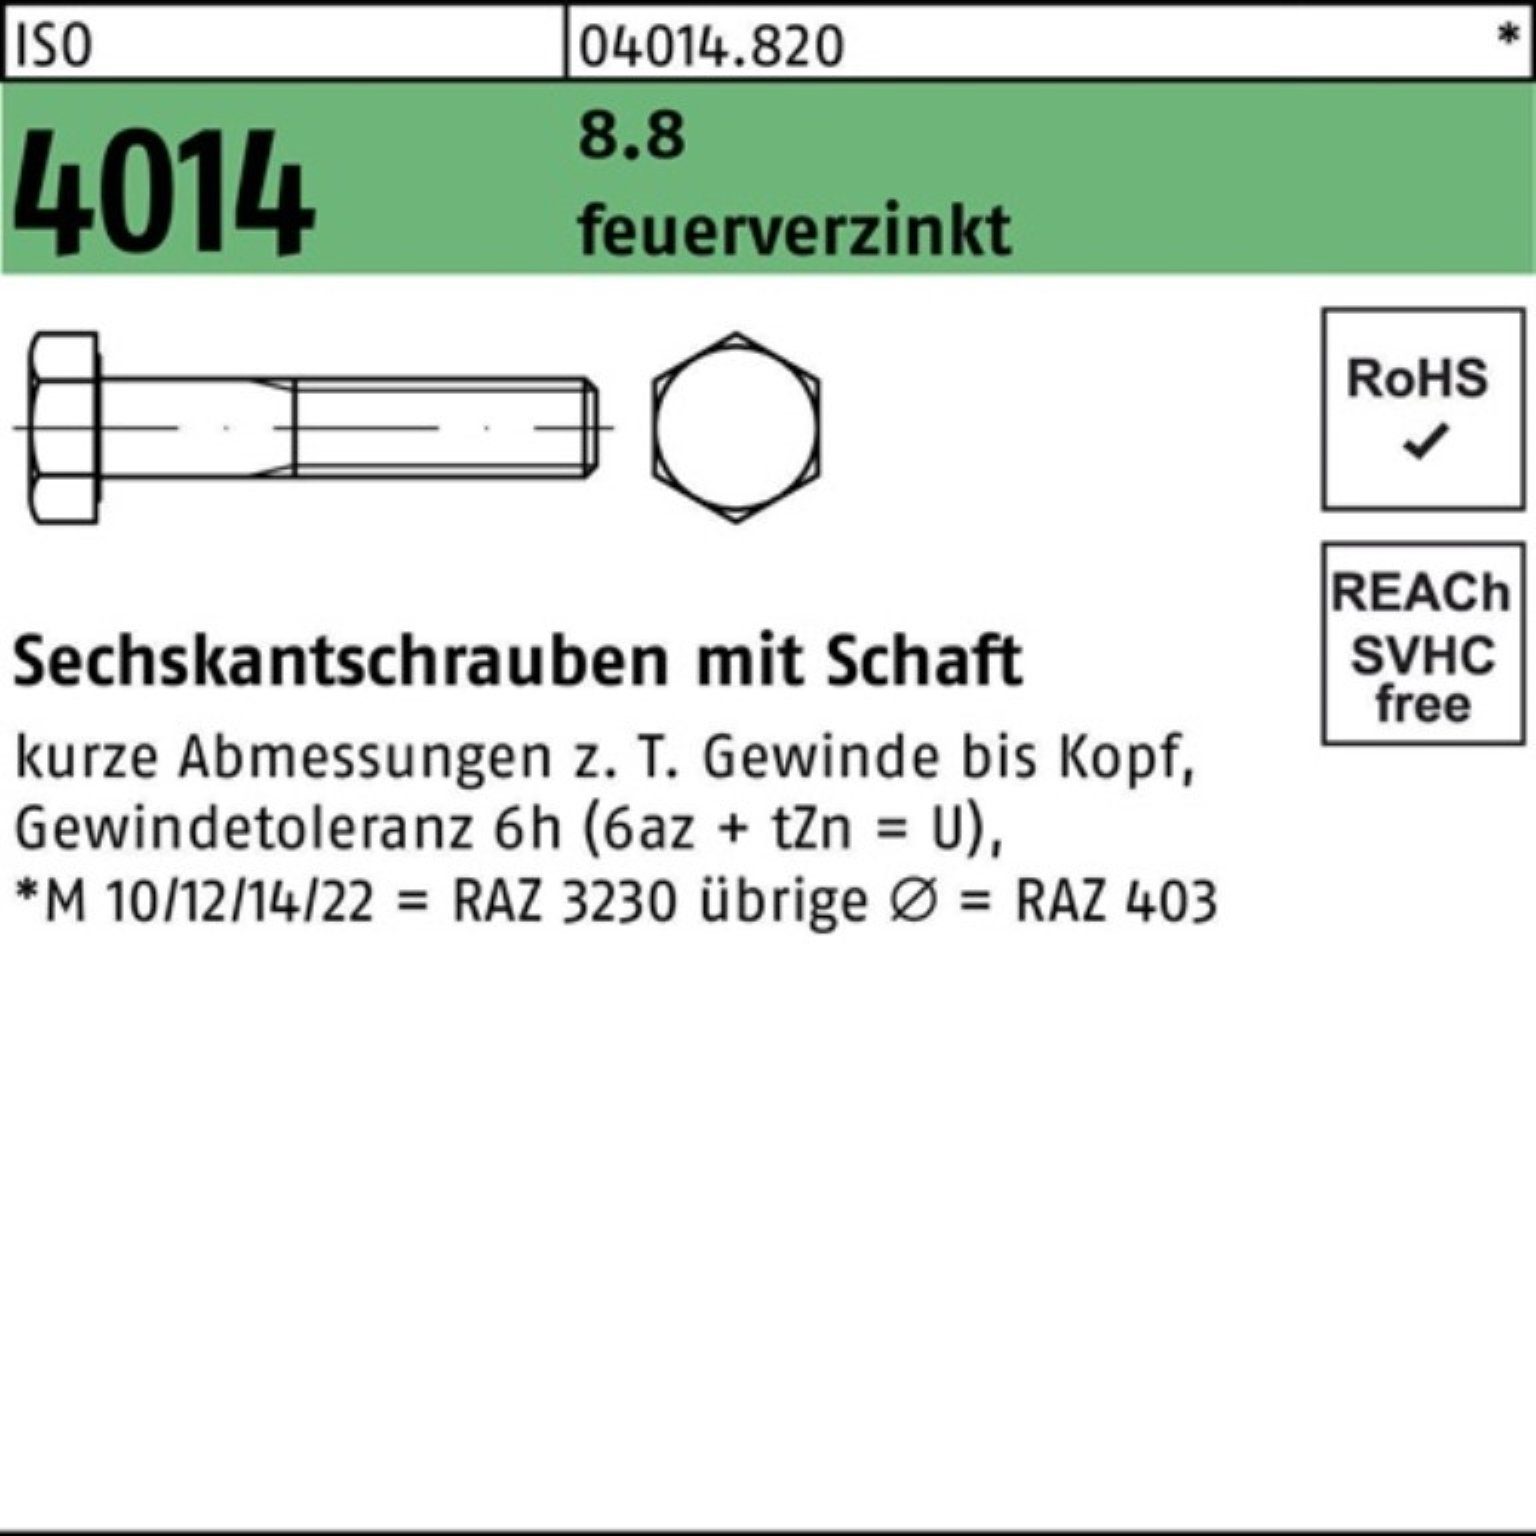 Bufab Sechskantschraube 100er Pack Sechskantschraube ISO 4014 Schaft M16x 260 8.8 feuerverz. 1